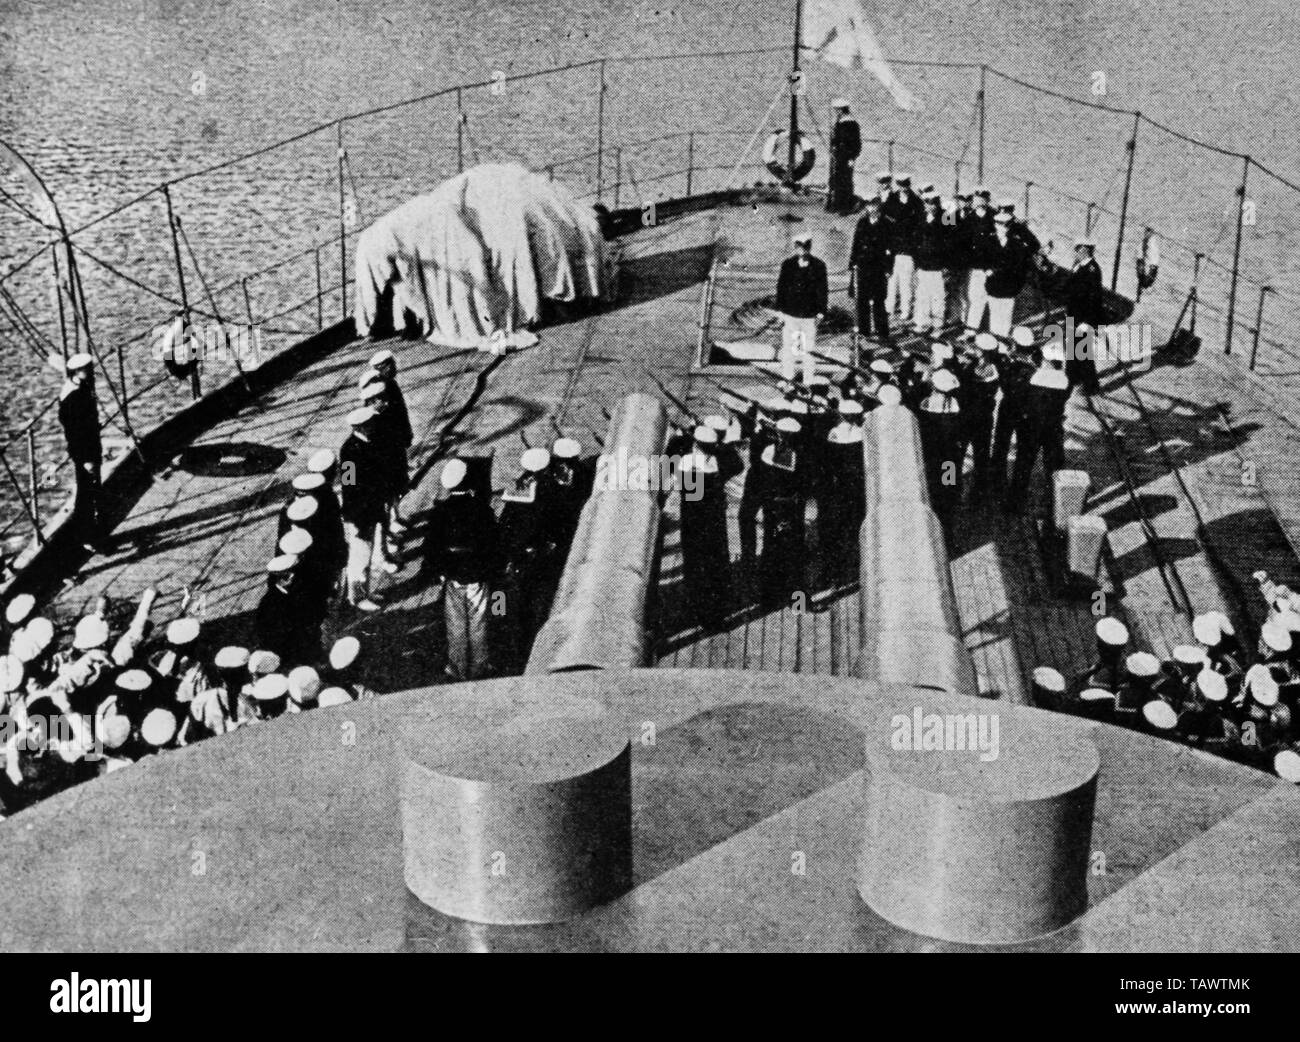 Panzerkreuzer Potemkin, das Sandmännchen potyomkin, sowjetische Stummfilm unter der Regie von Sergej Michajlovic ejzenstejn, 1925 Stockfoto